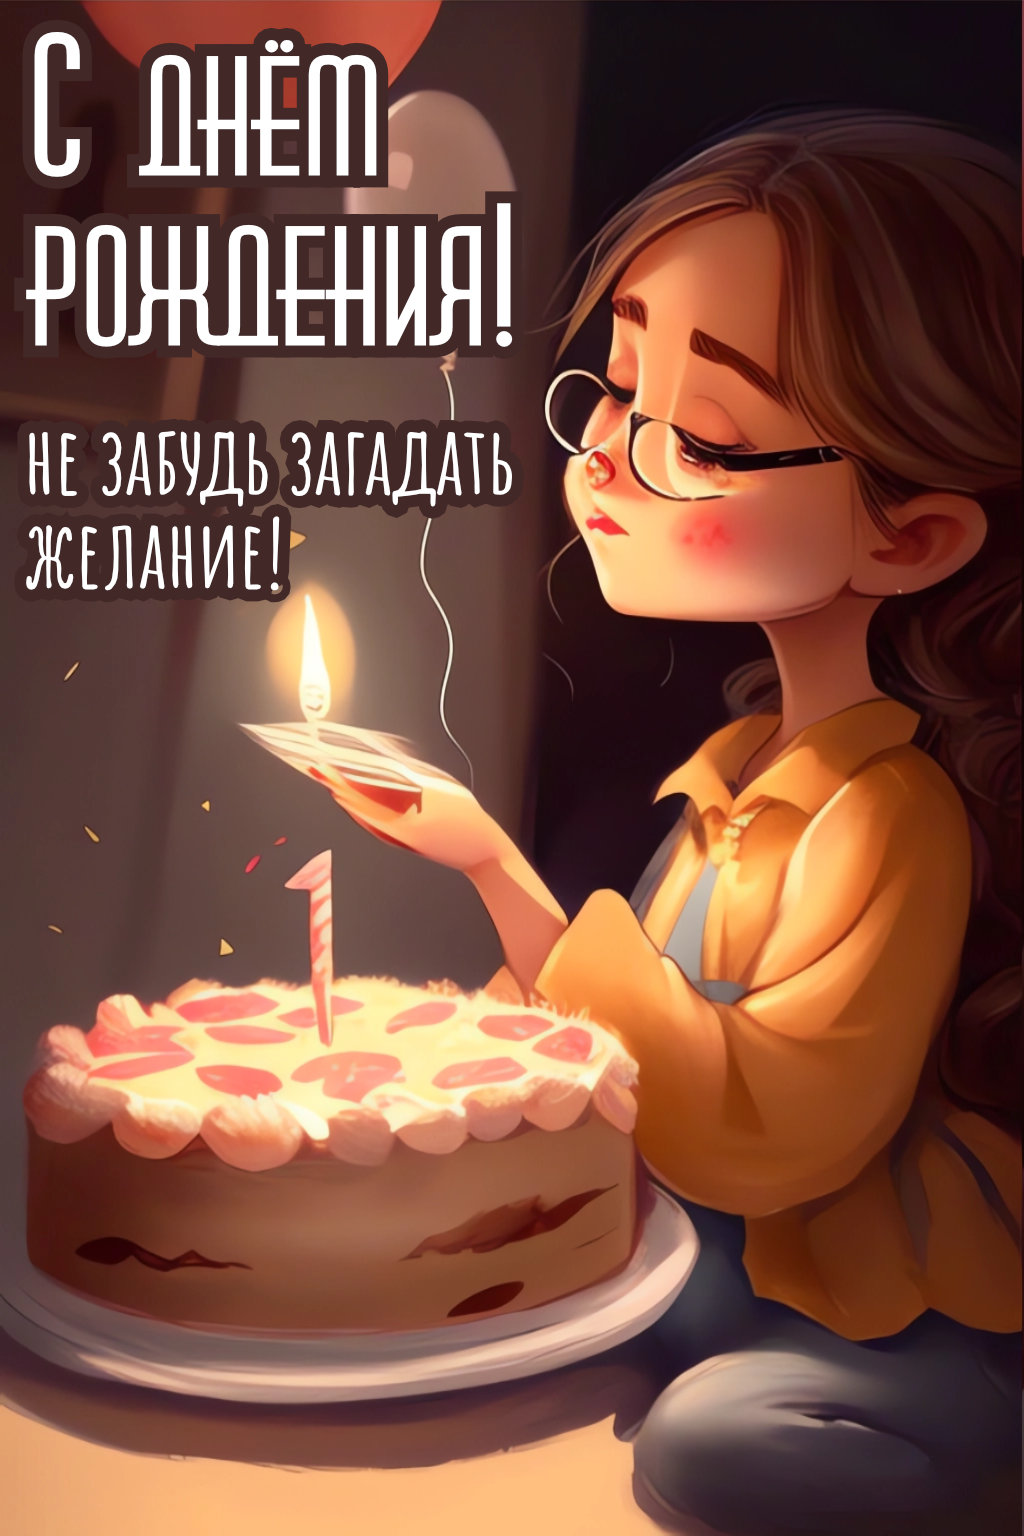 Открытка на день рождения «Девочка с тортиком со свечами»